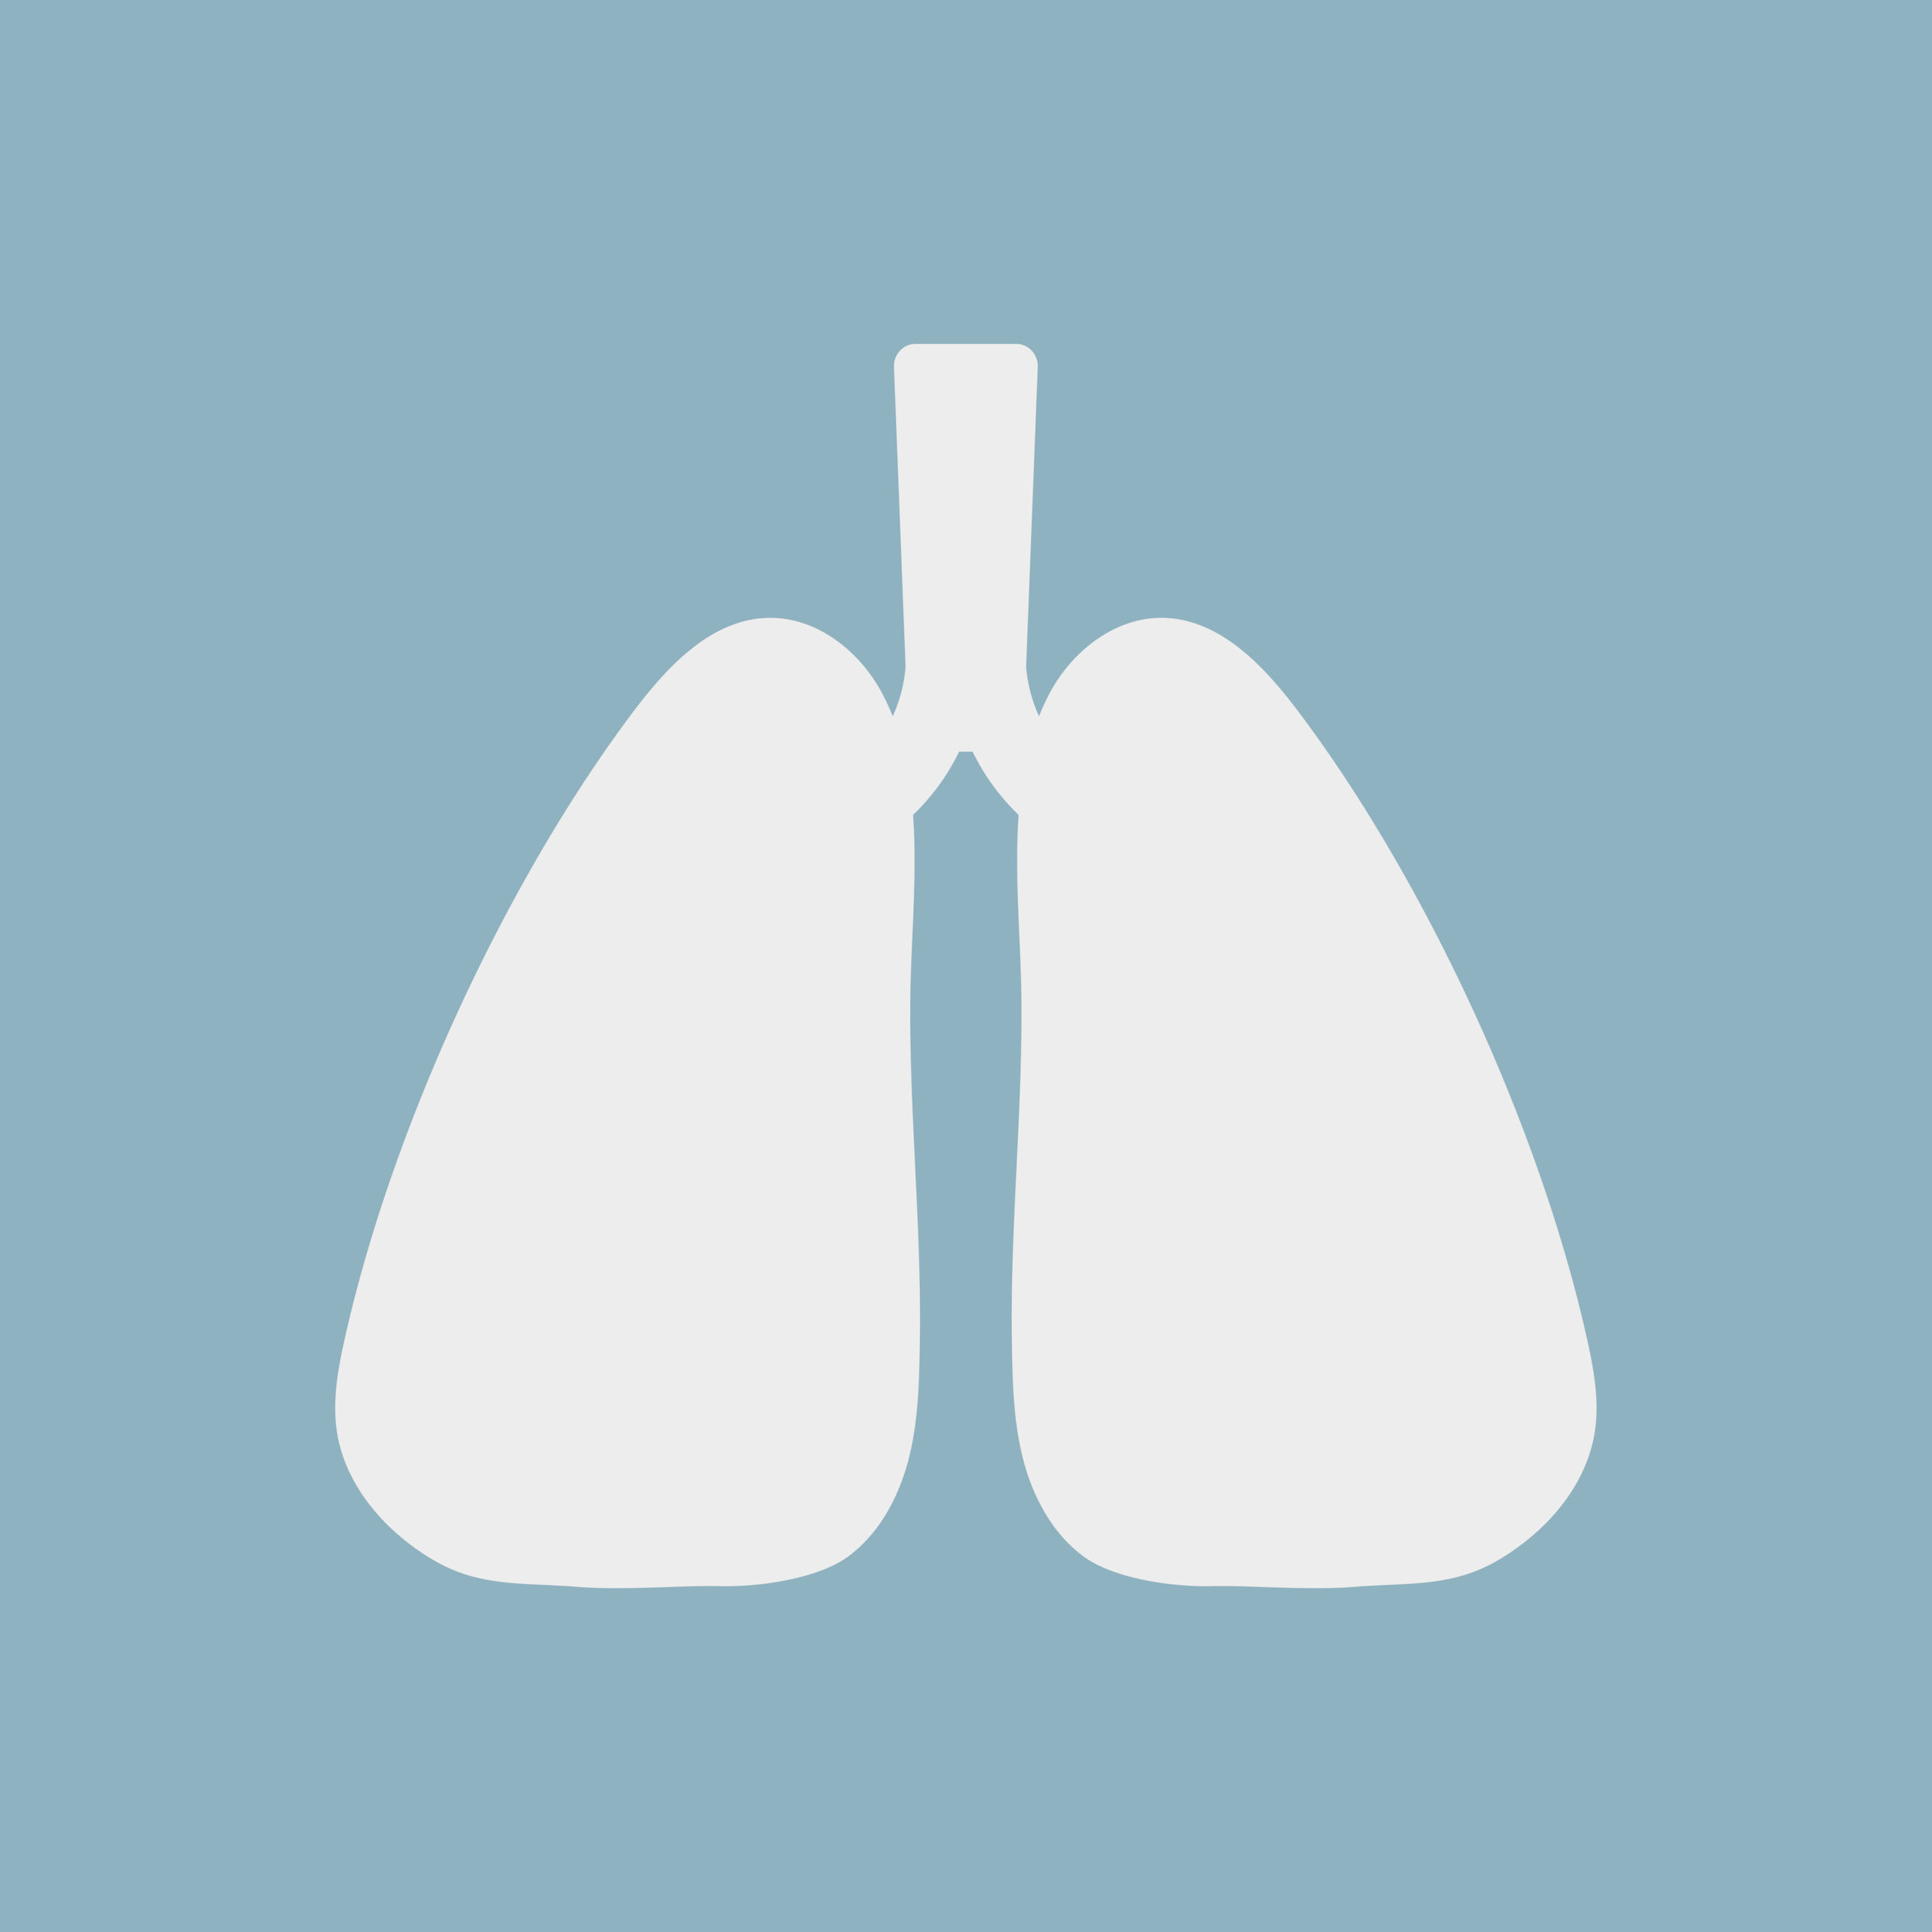 fibrose pulmonar